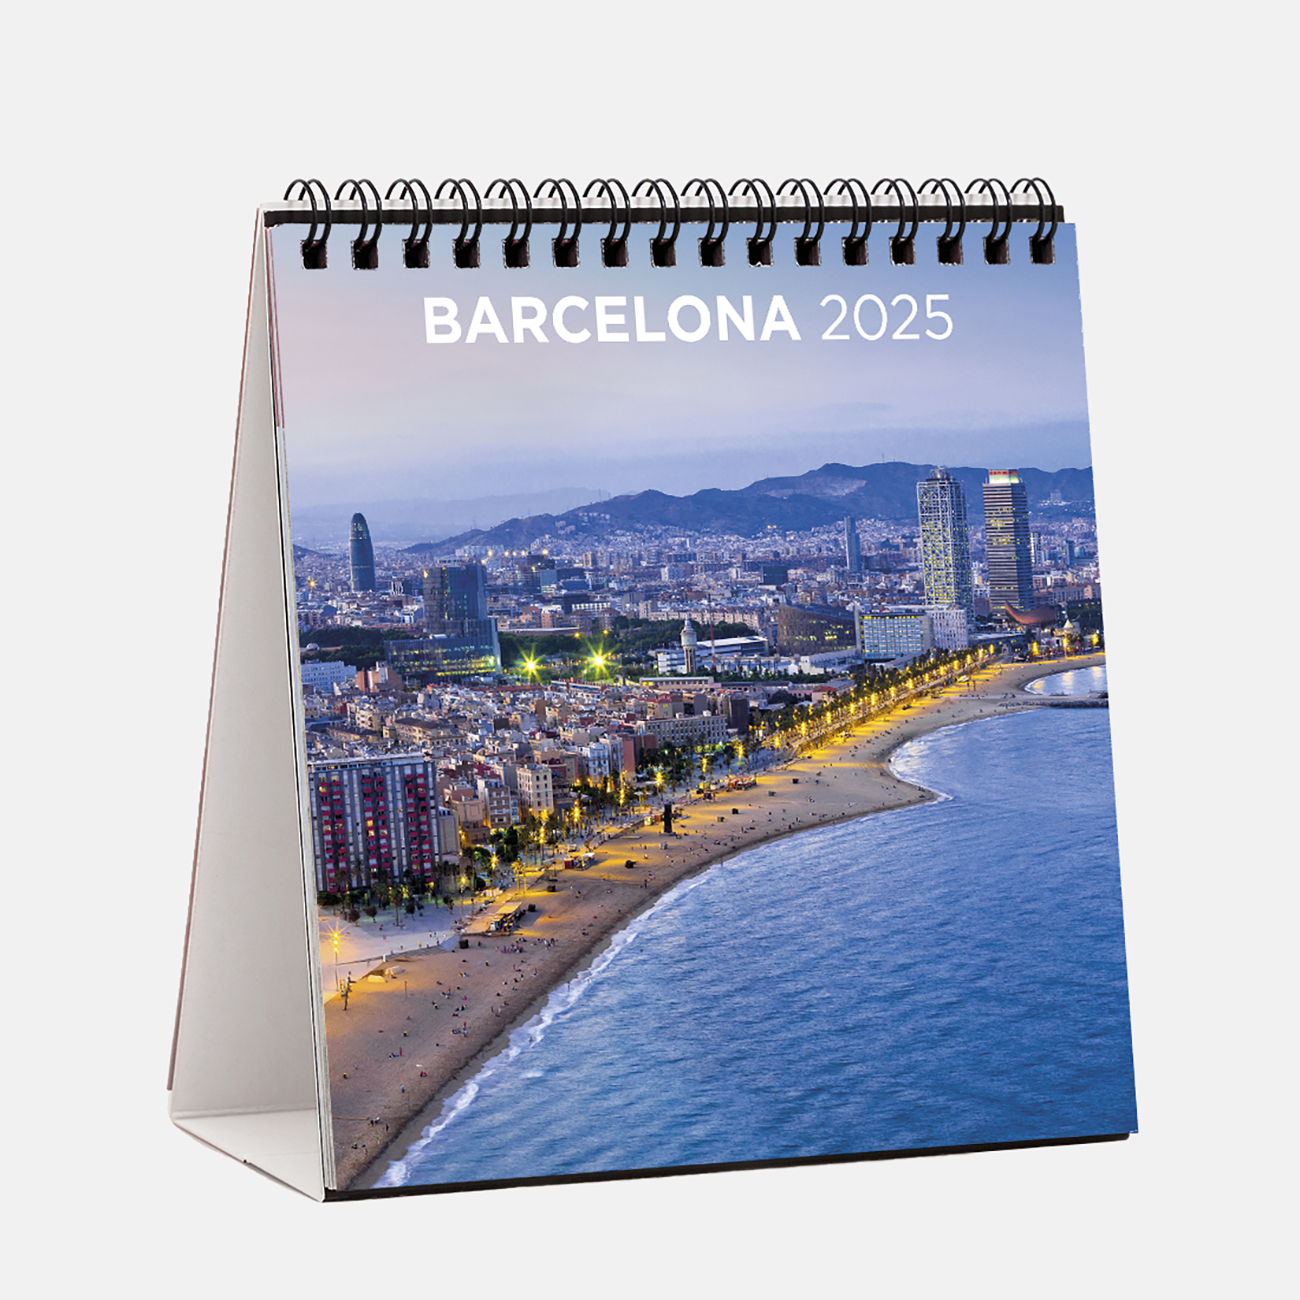 Calendar 2025 Barcelona s25b1 calendario sobremesa 2025 barcelona